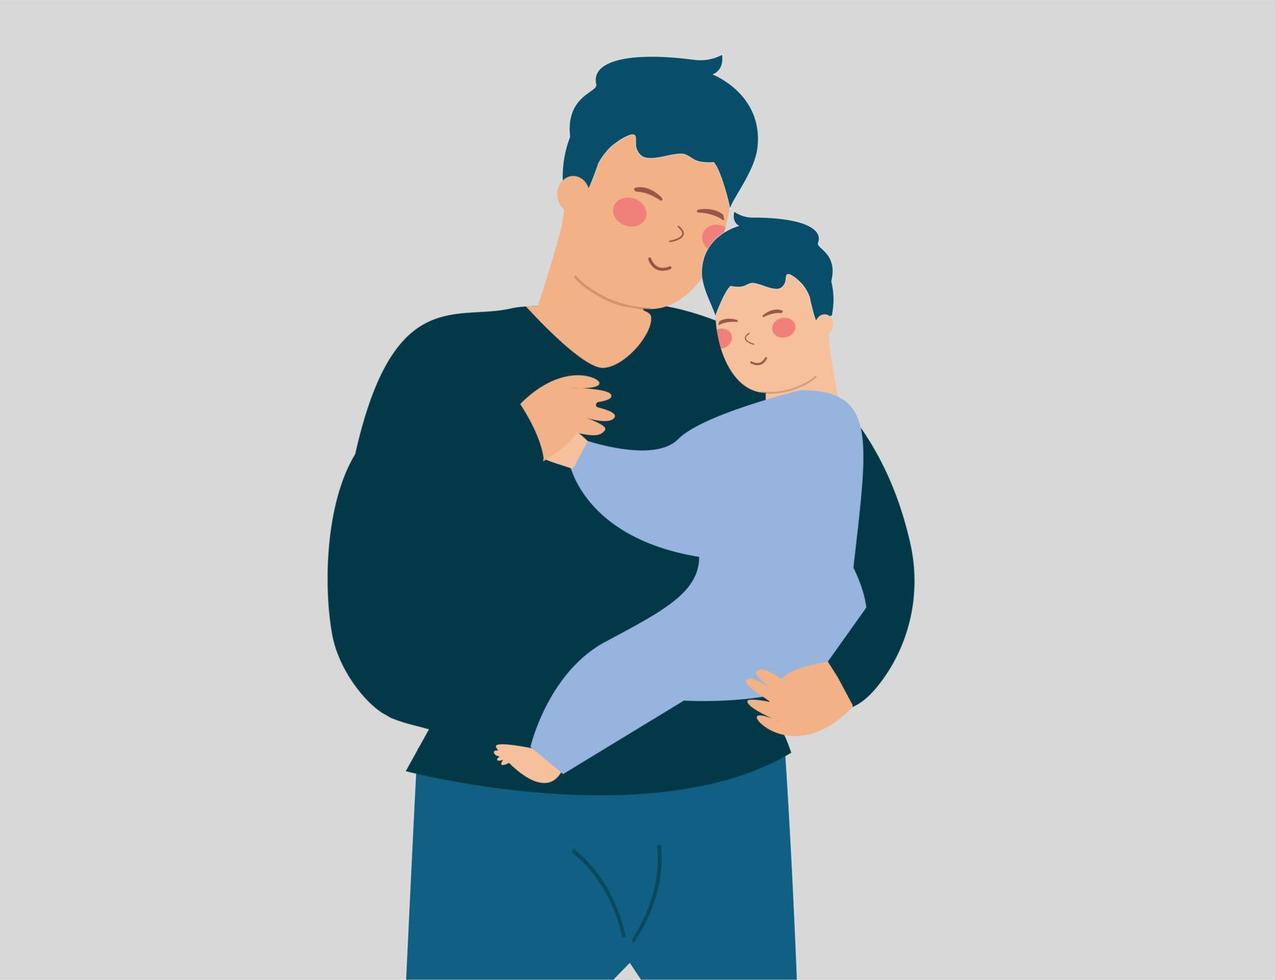 gelukkige vader omhelst en knuffelt zijn pasgeboren baby met zorg. jonge vader houdt zijn zoontje vast en speelt met hem. vaderschapservaring, positief ouderschap, gelukkig vaderdagconcept. vector illustratie